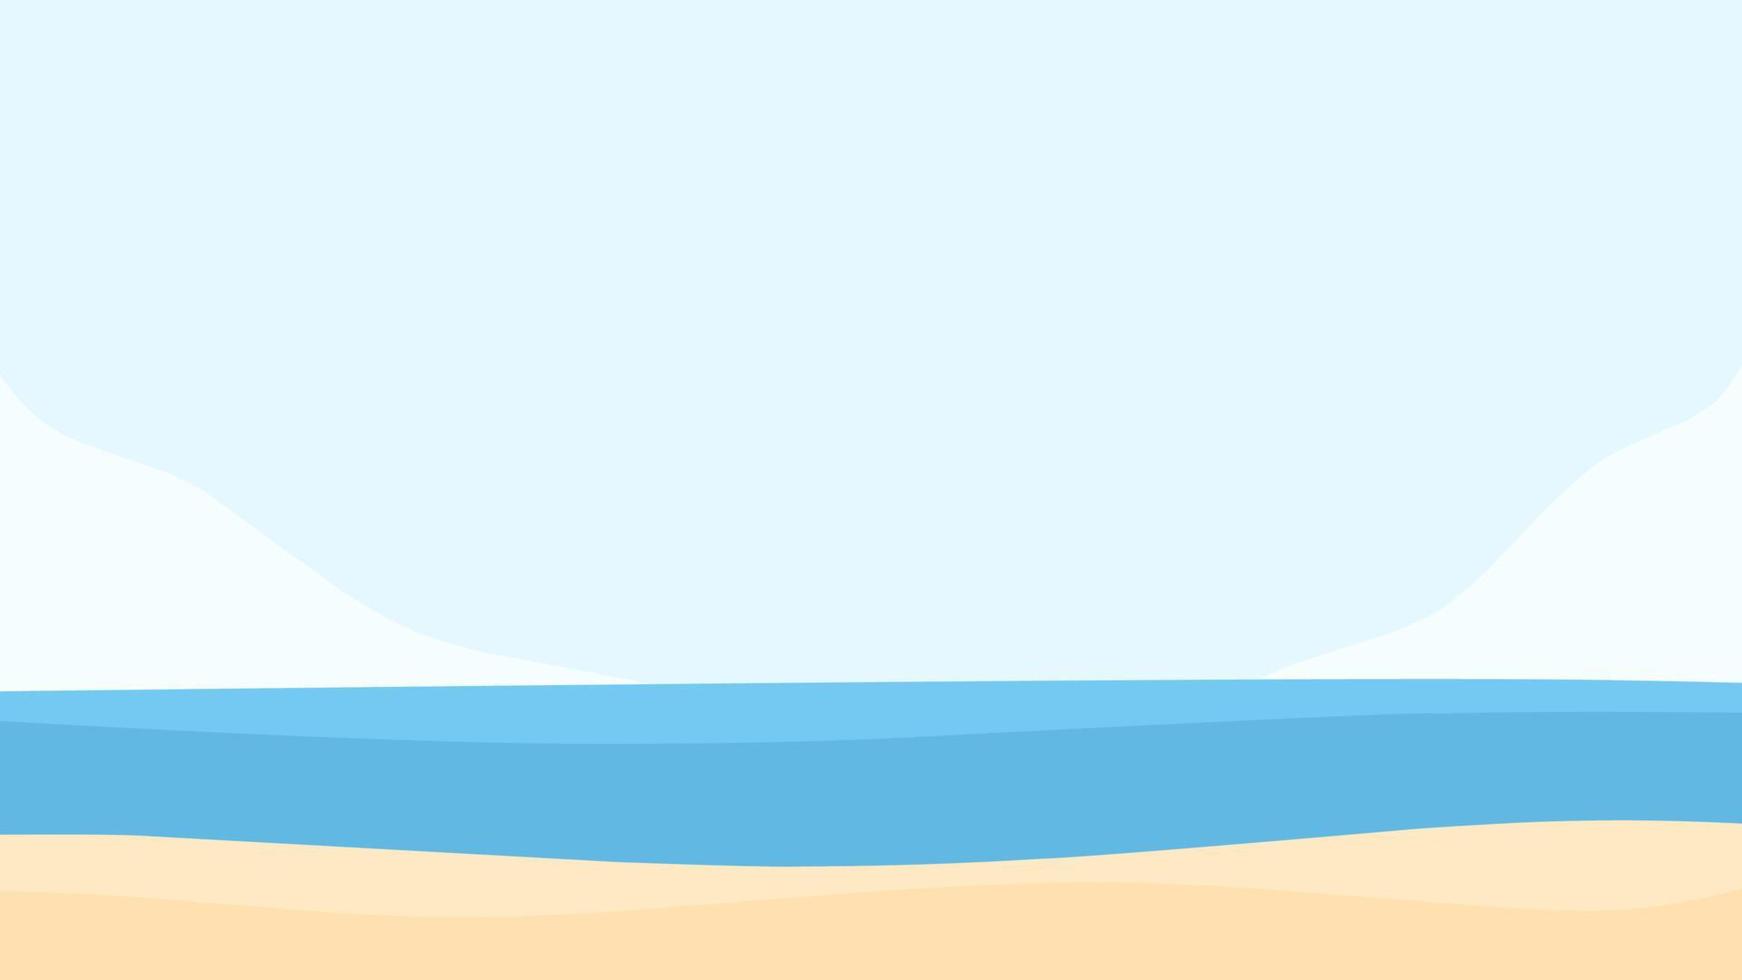 landskapsillustration fridfull strandbakgrund med blått hav och klar himmel, kokospalmer och fyr som lämpar sig för sommardesign, semester, dekoration och mer vektor